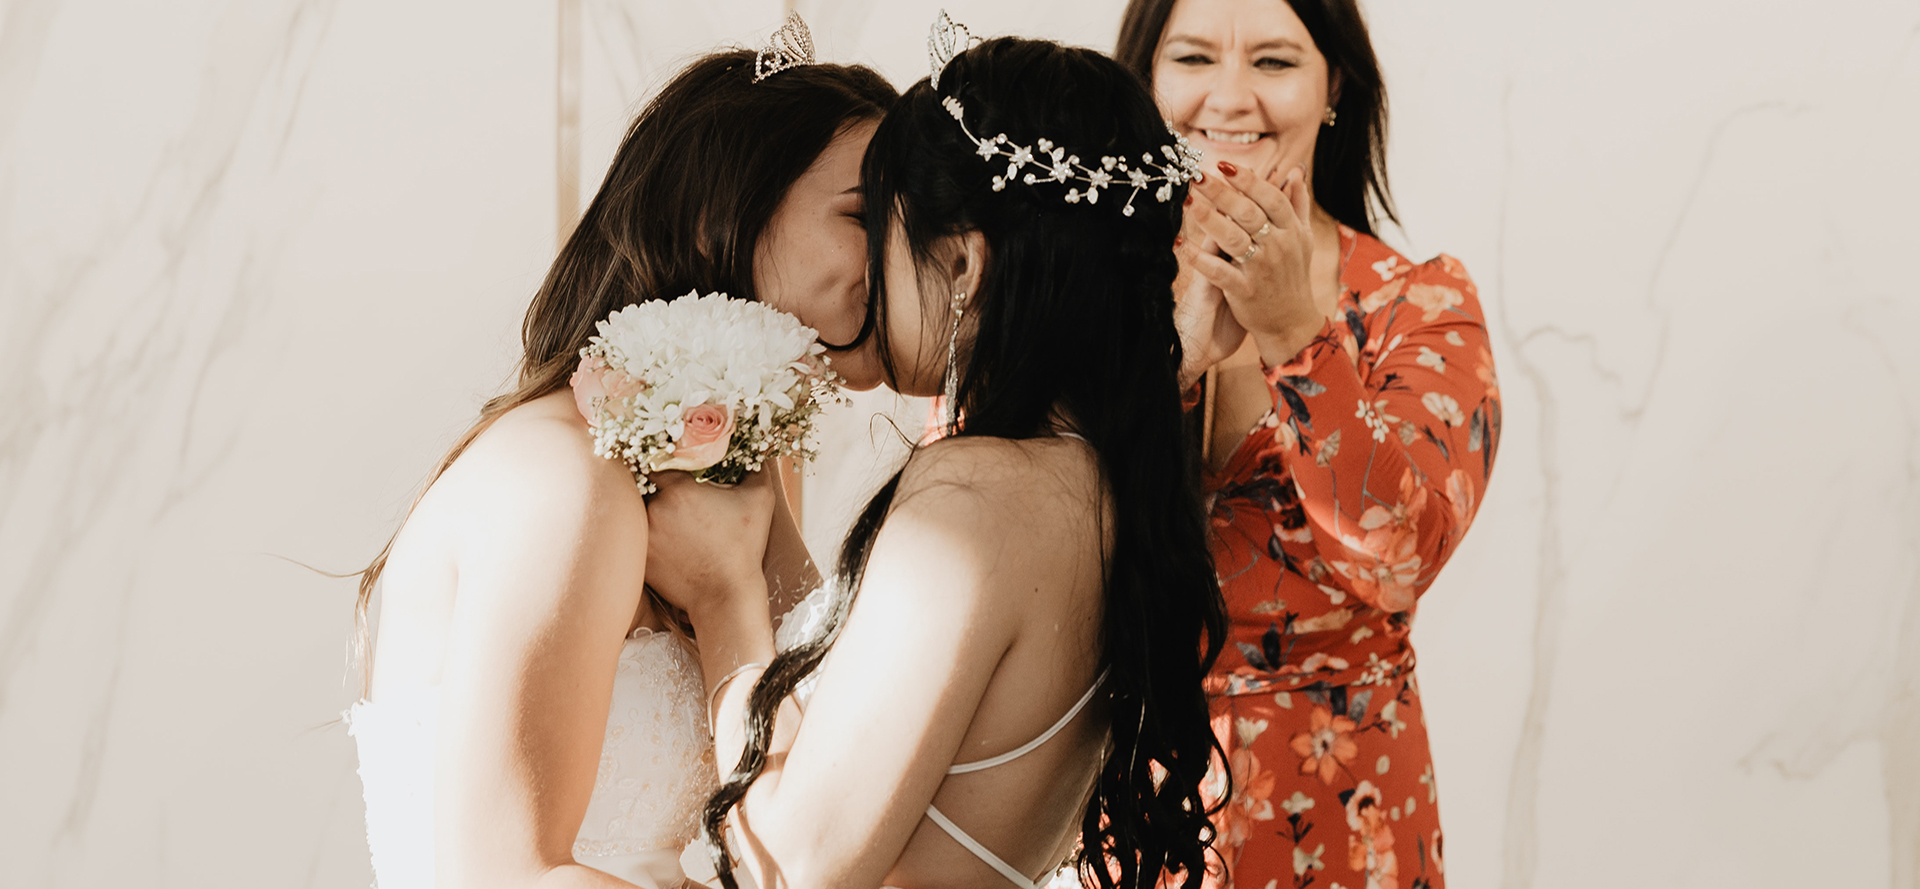 Lesbian wedding.